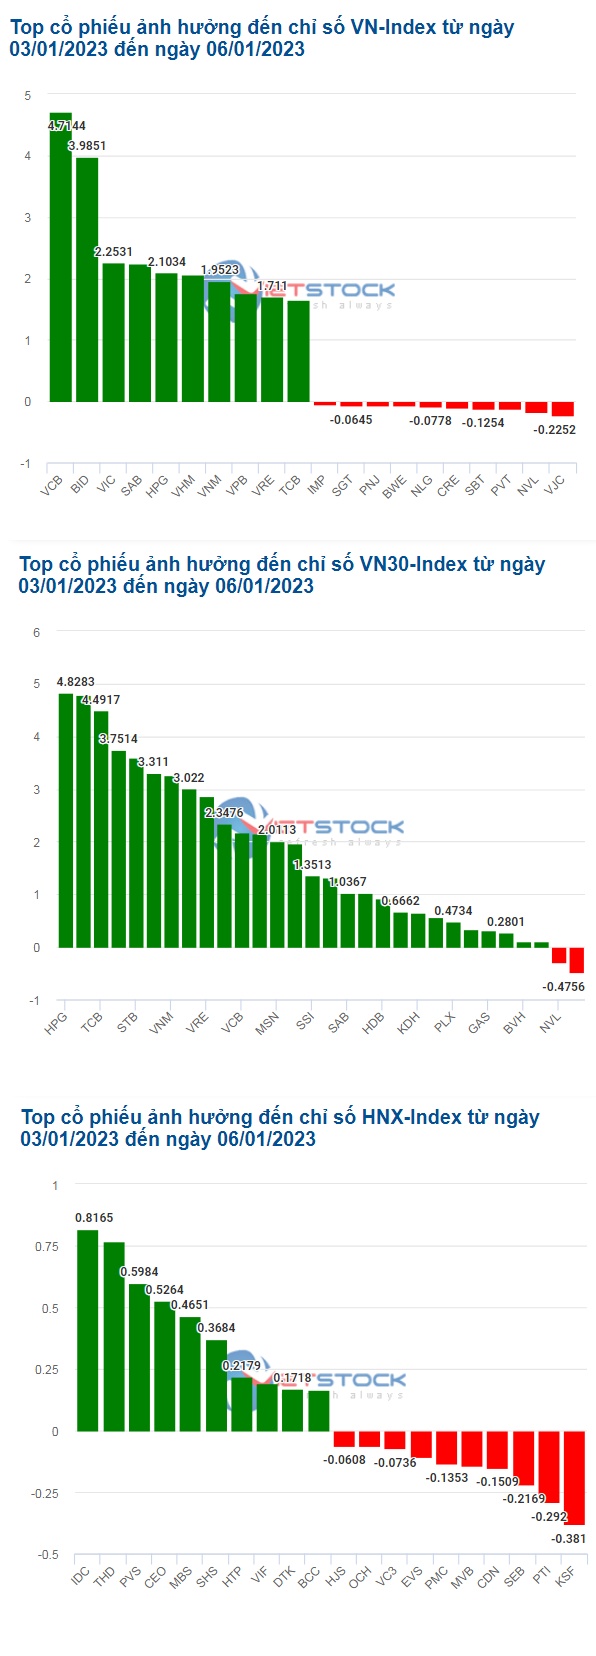 Cổ phiếu nào giúp VN-Index vượt mốc 1,050 điểm?